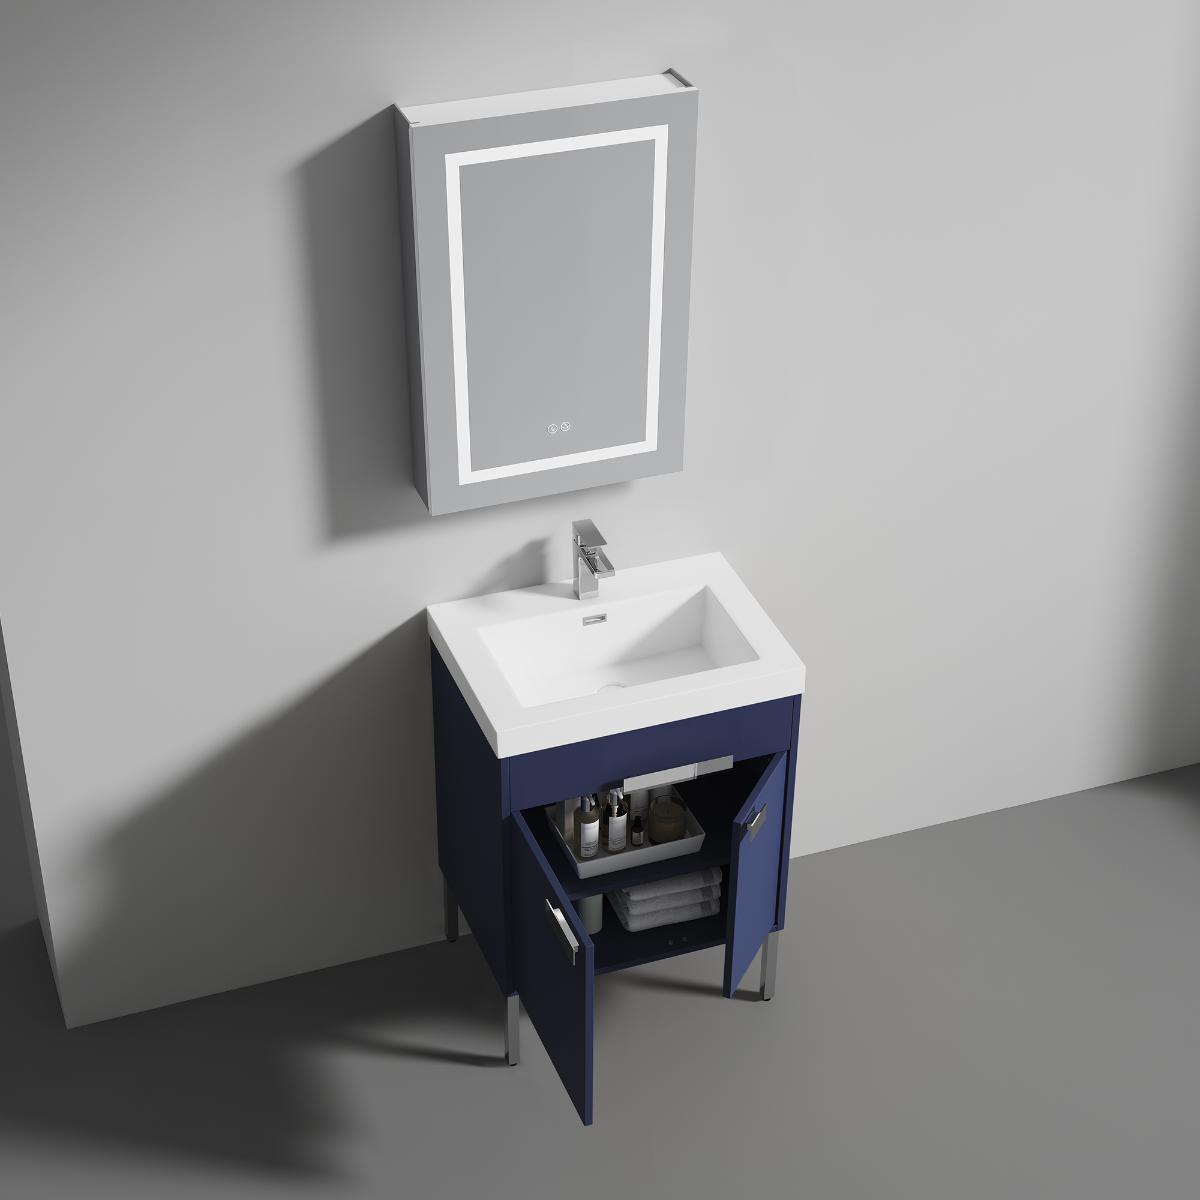 Bari 24" Bathroom Vanity  #size_24"  #color_navy blue